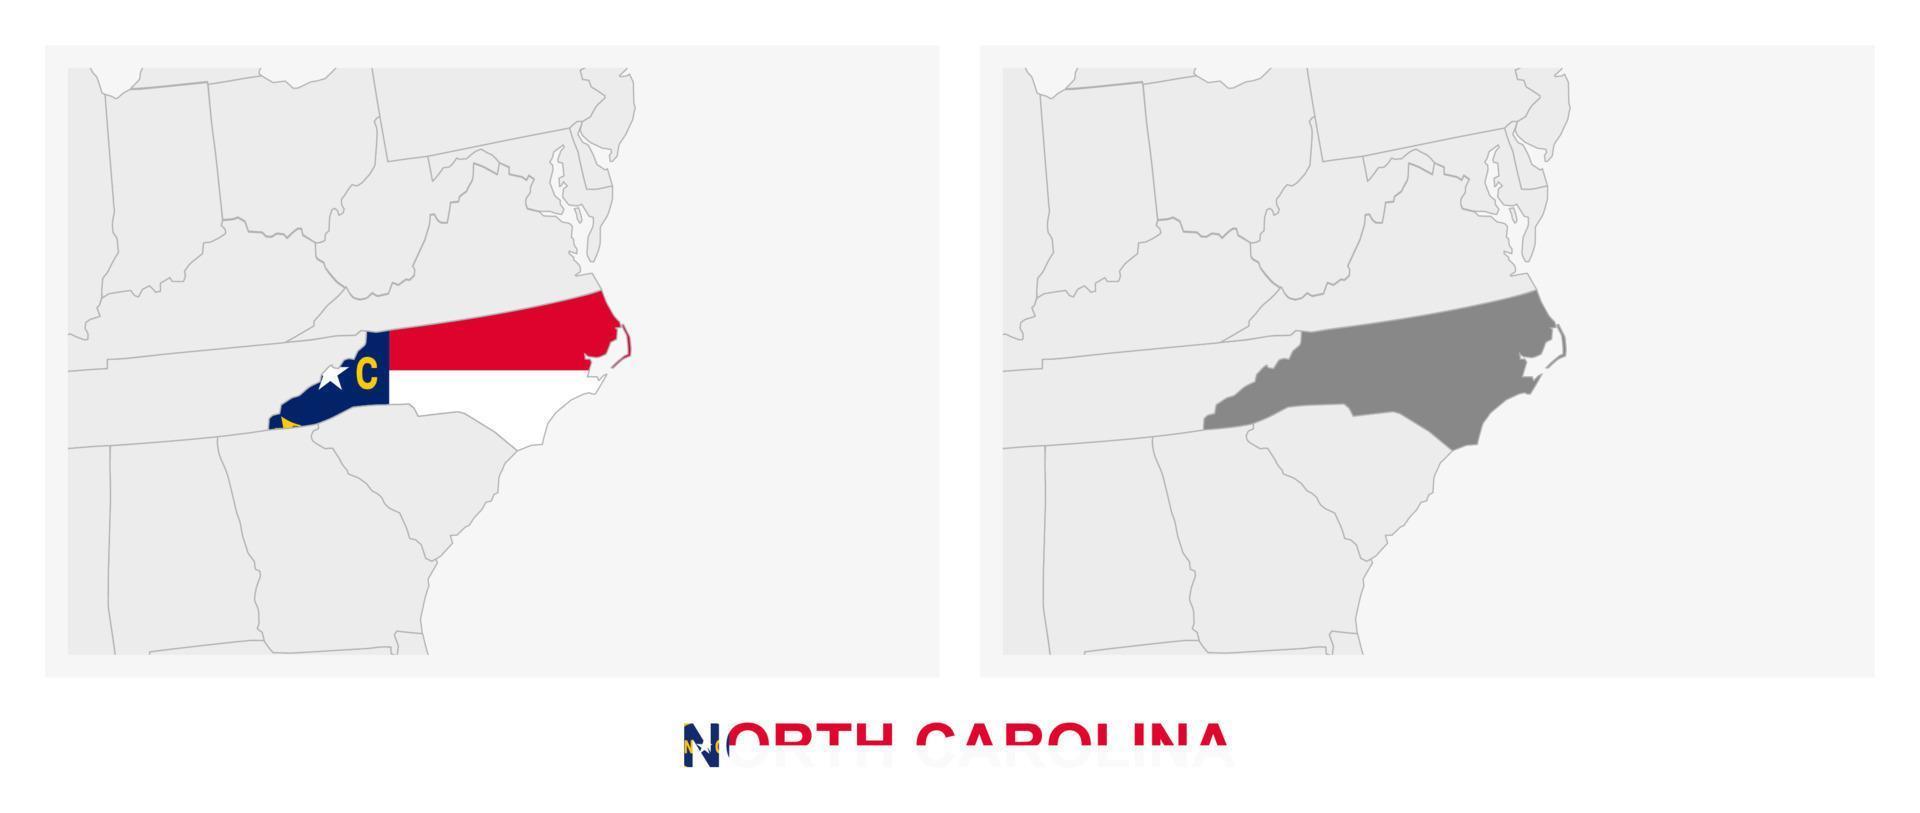 zwei versionen der karte des us-staates north carolina, mit der flagge von north carolina und dunkelgrau hervorgehoben. vektor